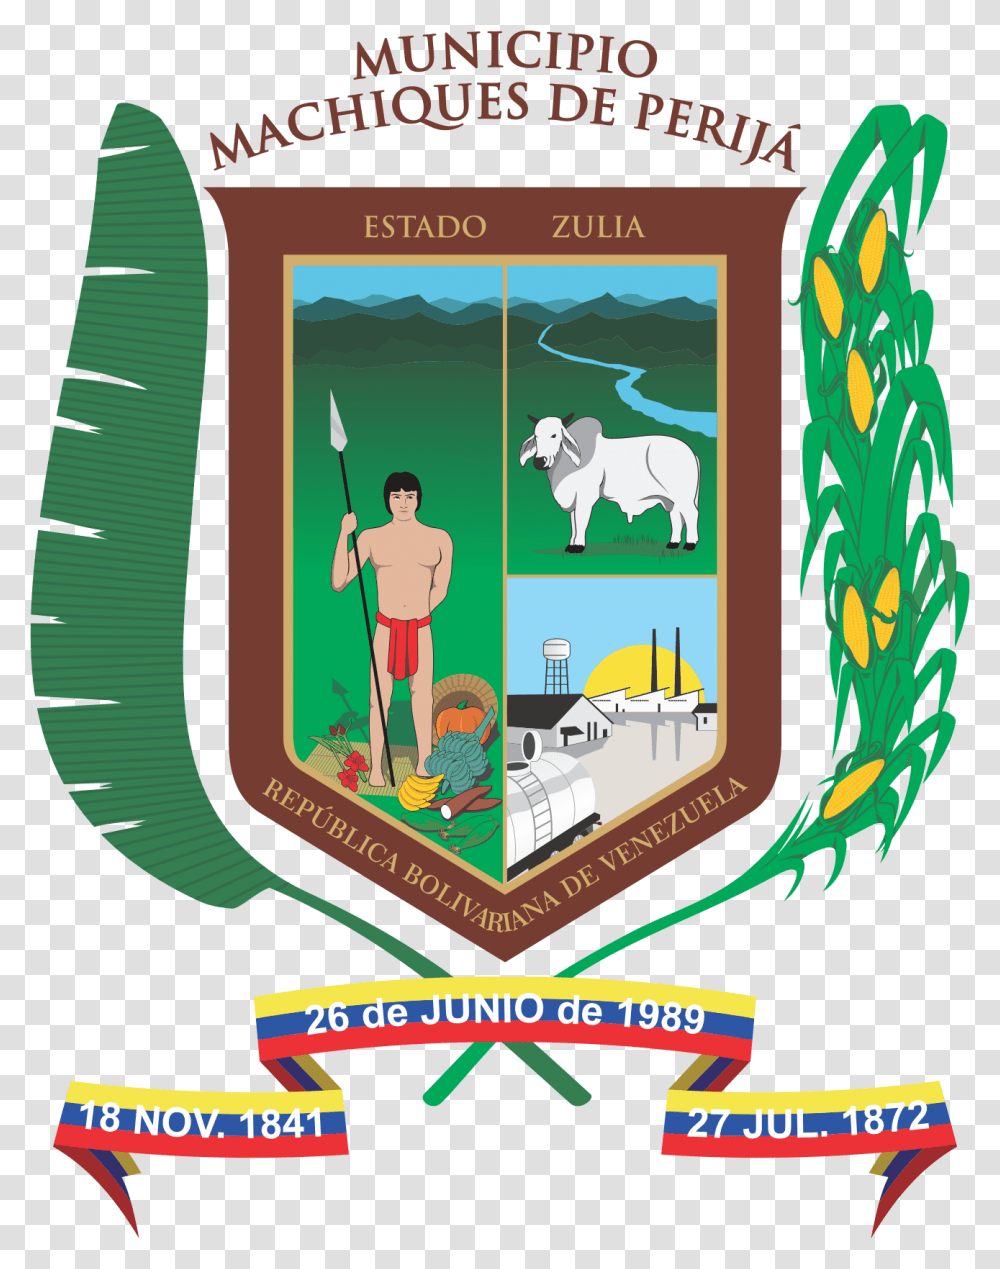 Escudo Machiques De Perija Bandera De Machiques, Person, Human, Logo Transparent Png